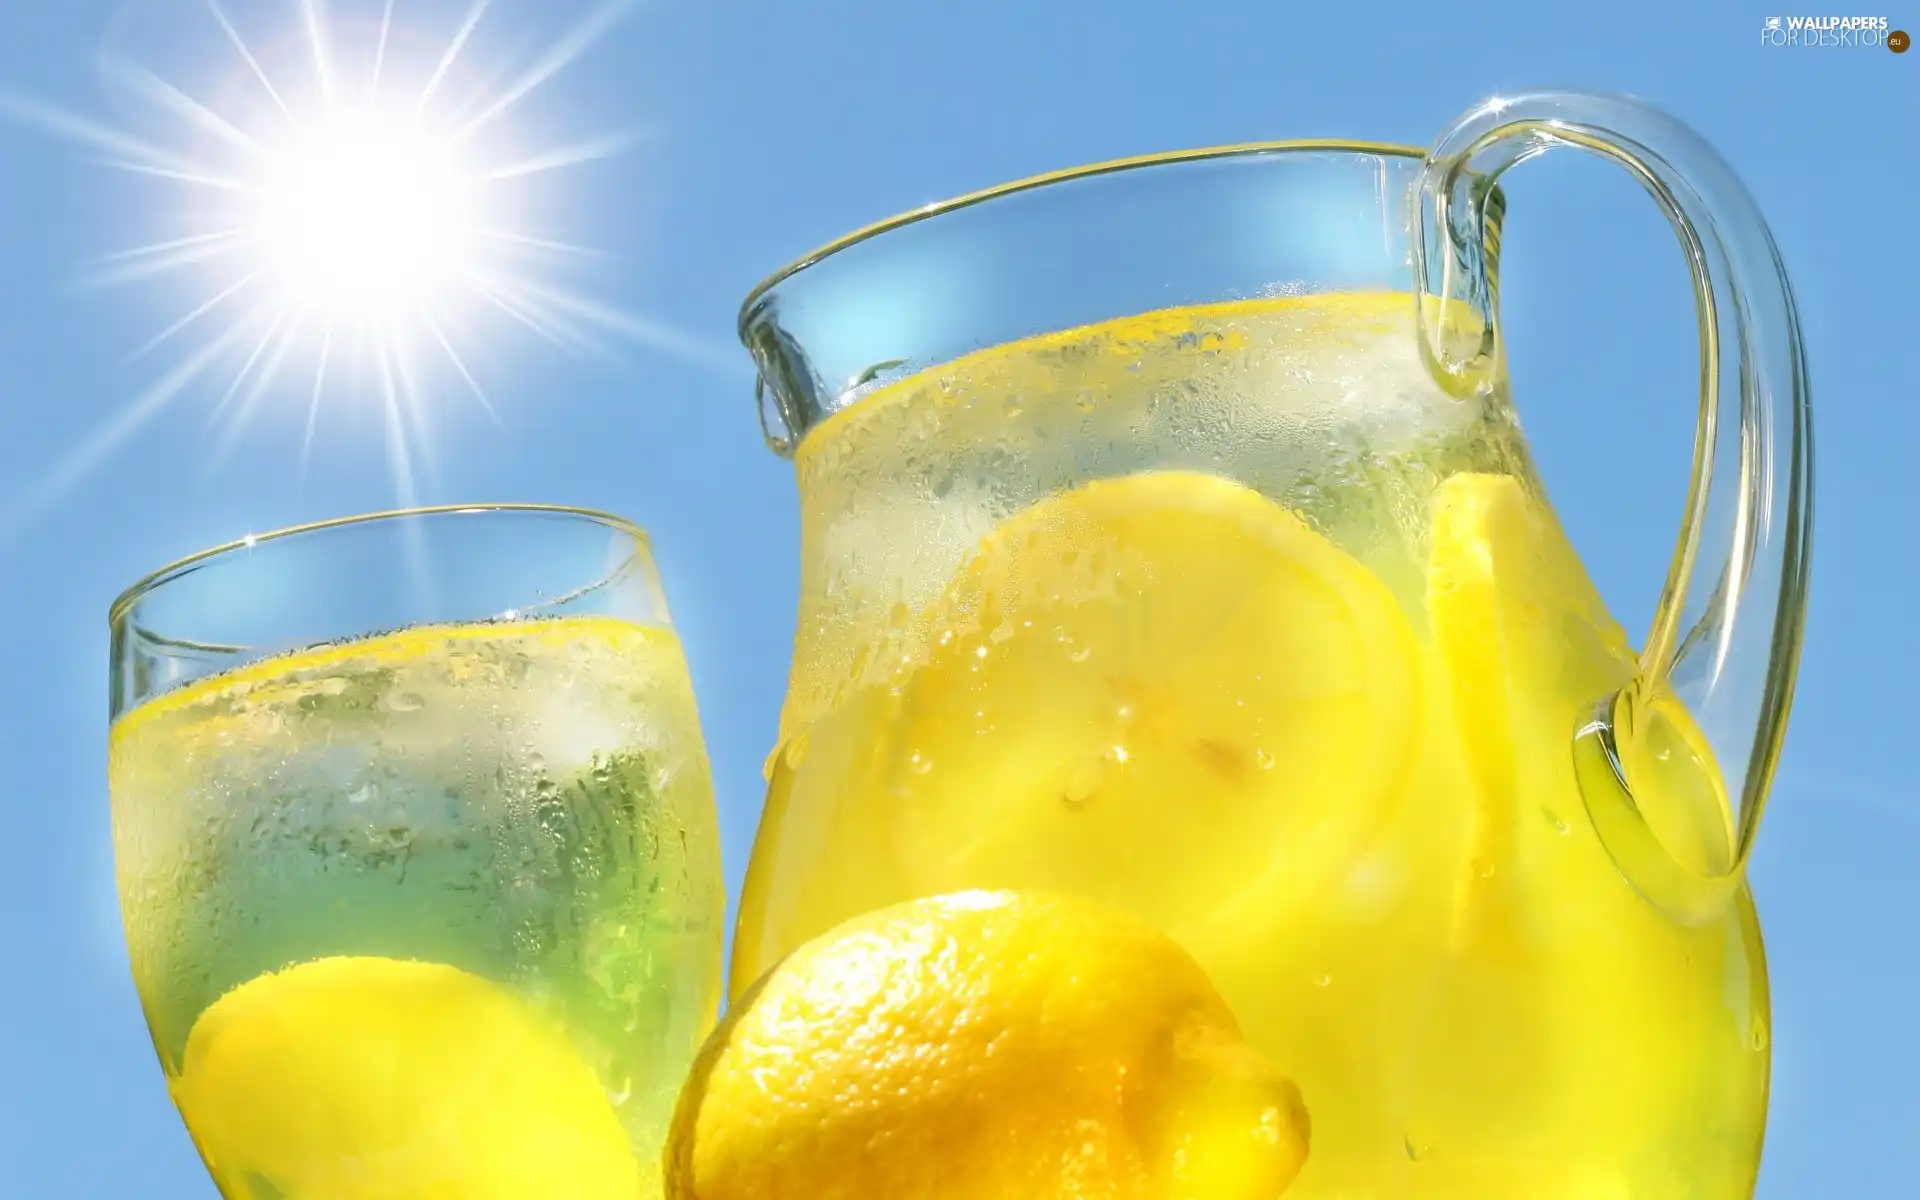 drink, lemons, jug